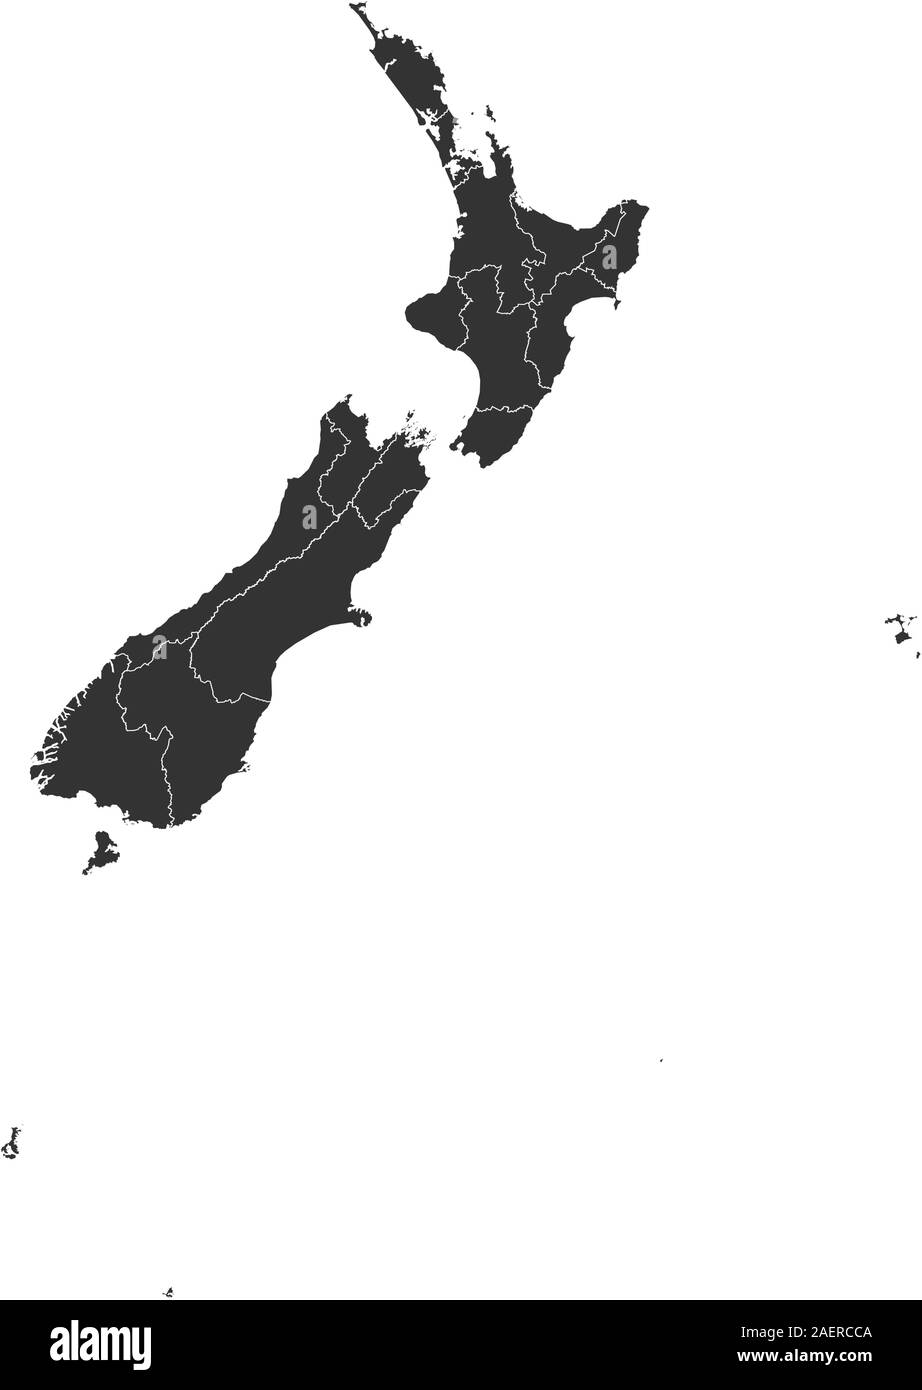 Moderna Nuova Zelanda mappa politico illustrazione vettoriale. Colore grigio. Paese dell'isola nell'oceano pacifico. Illustrazione Vettoriale